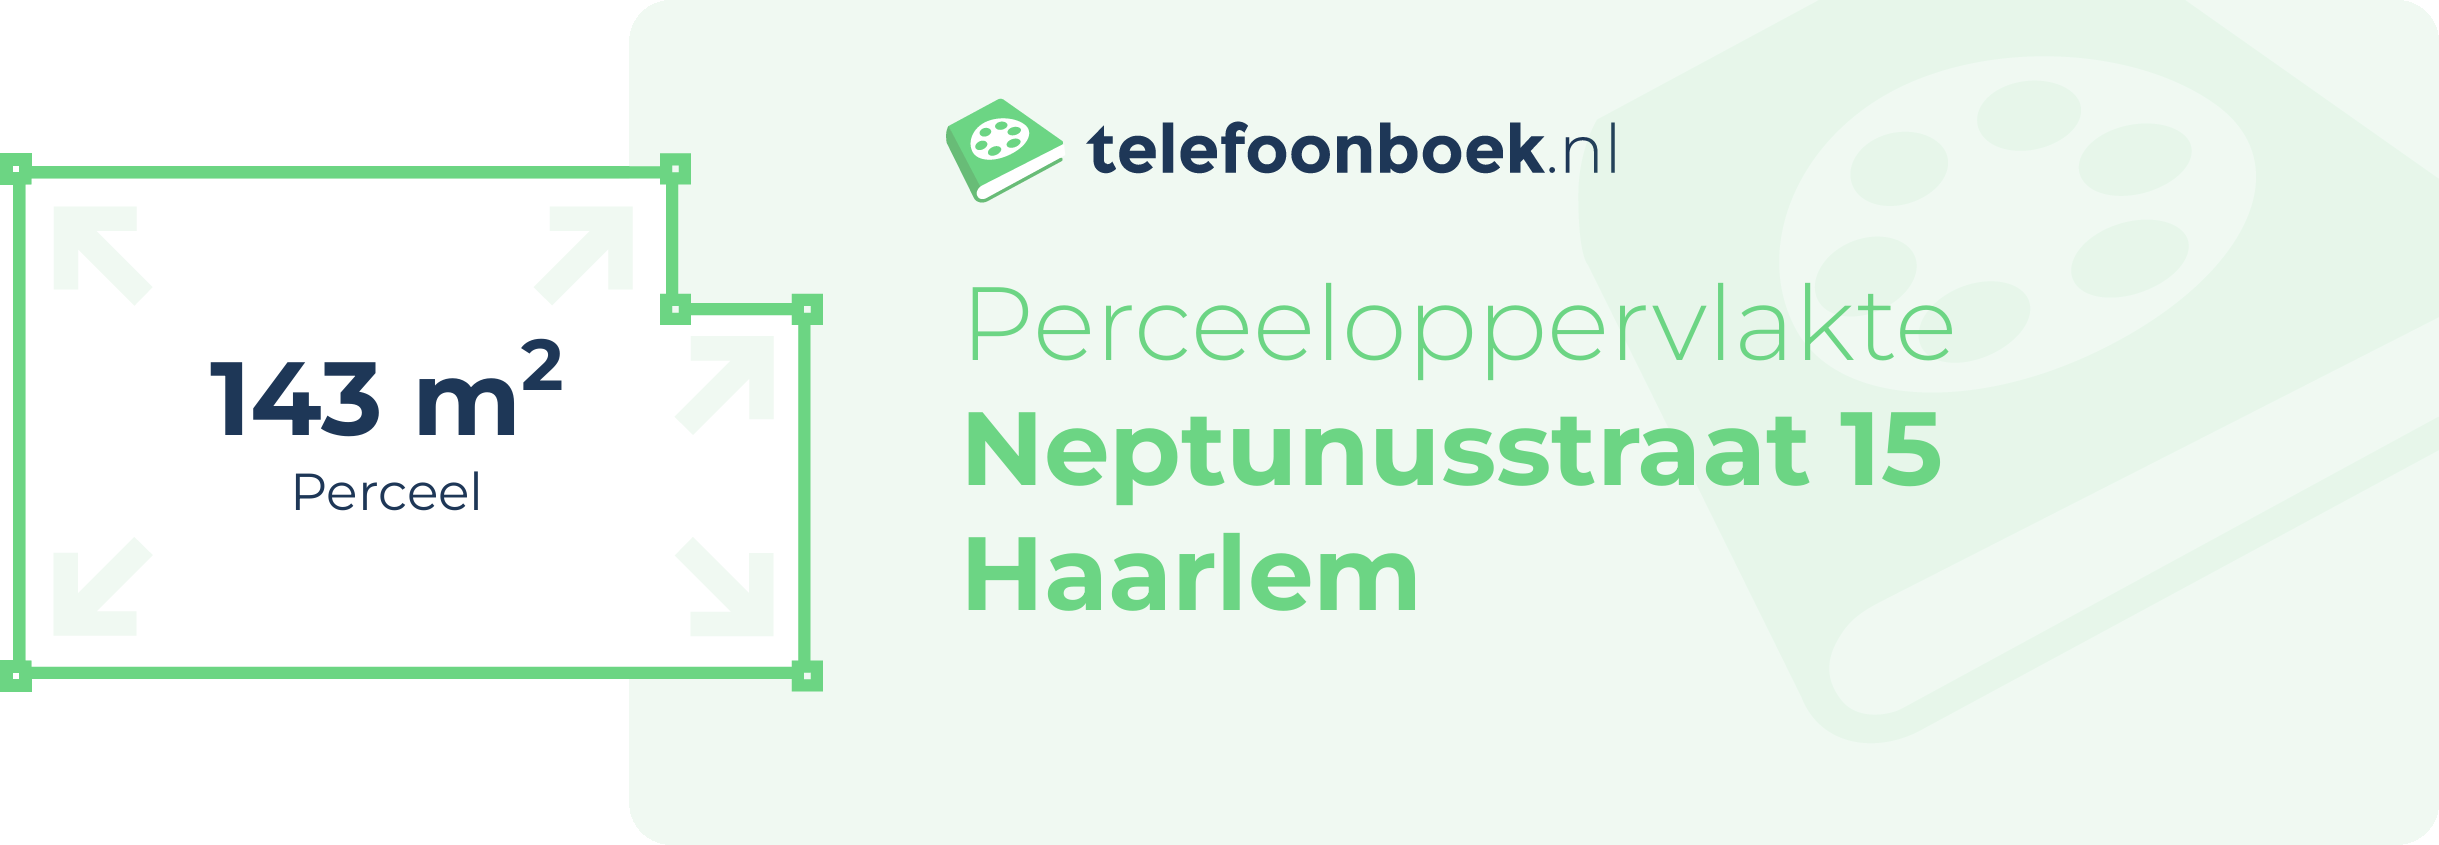 Perceeloppervlakte Neptunusstraat 15 Haarlem